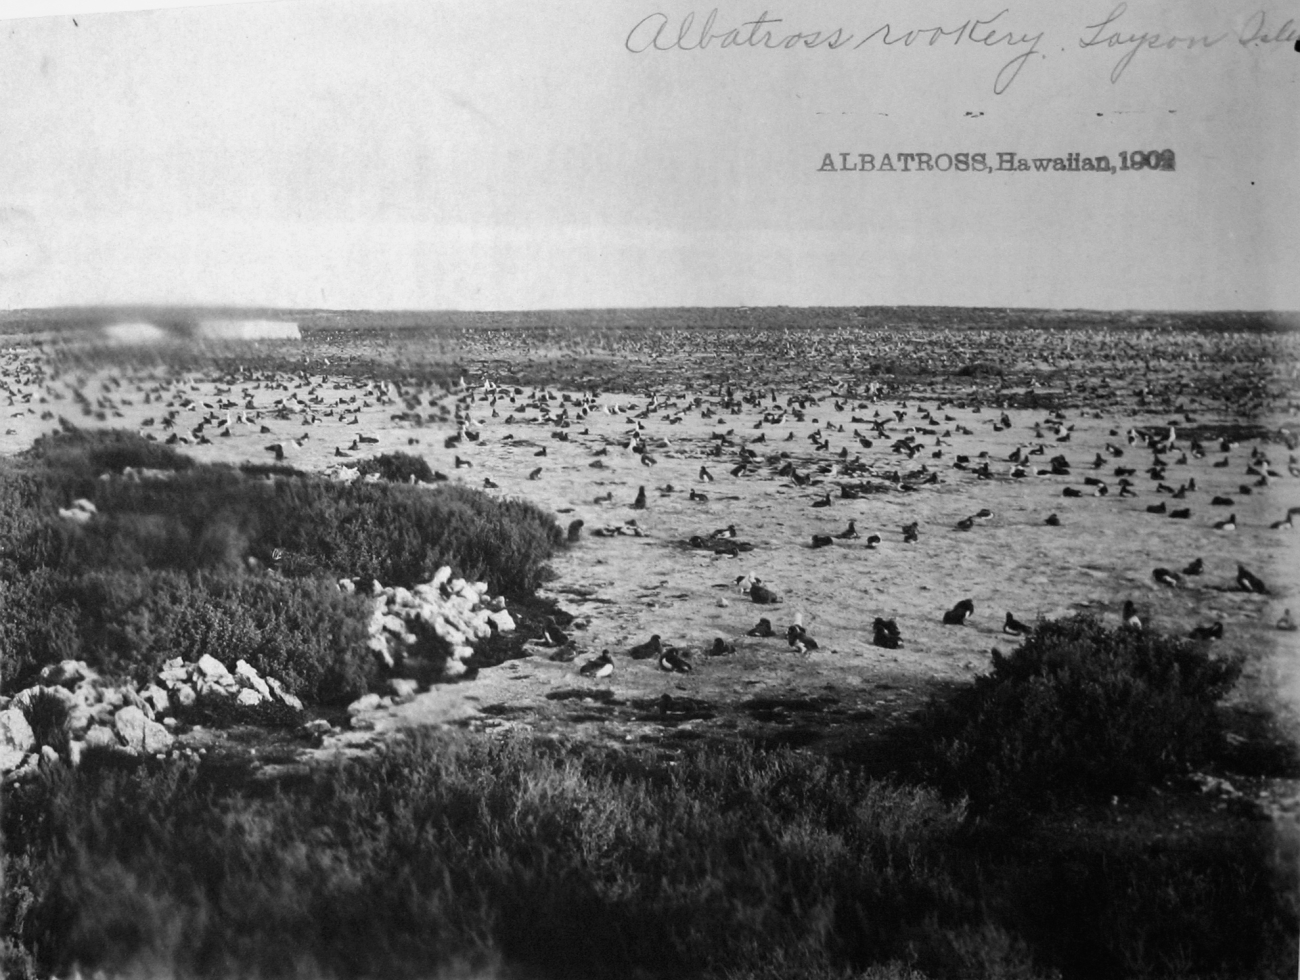 Albatross, HI, 1902, albatross rookery, Laysan Island